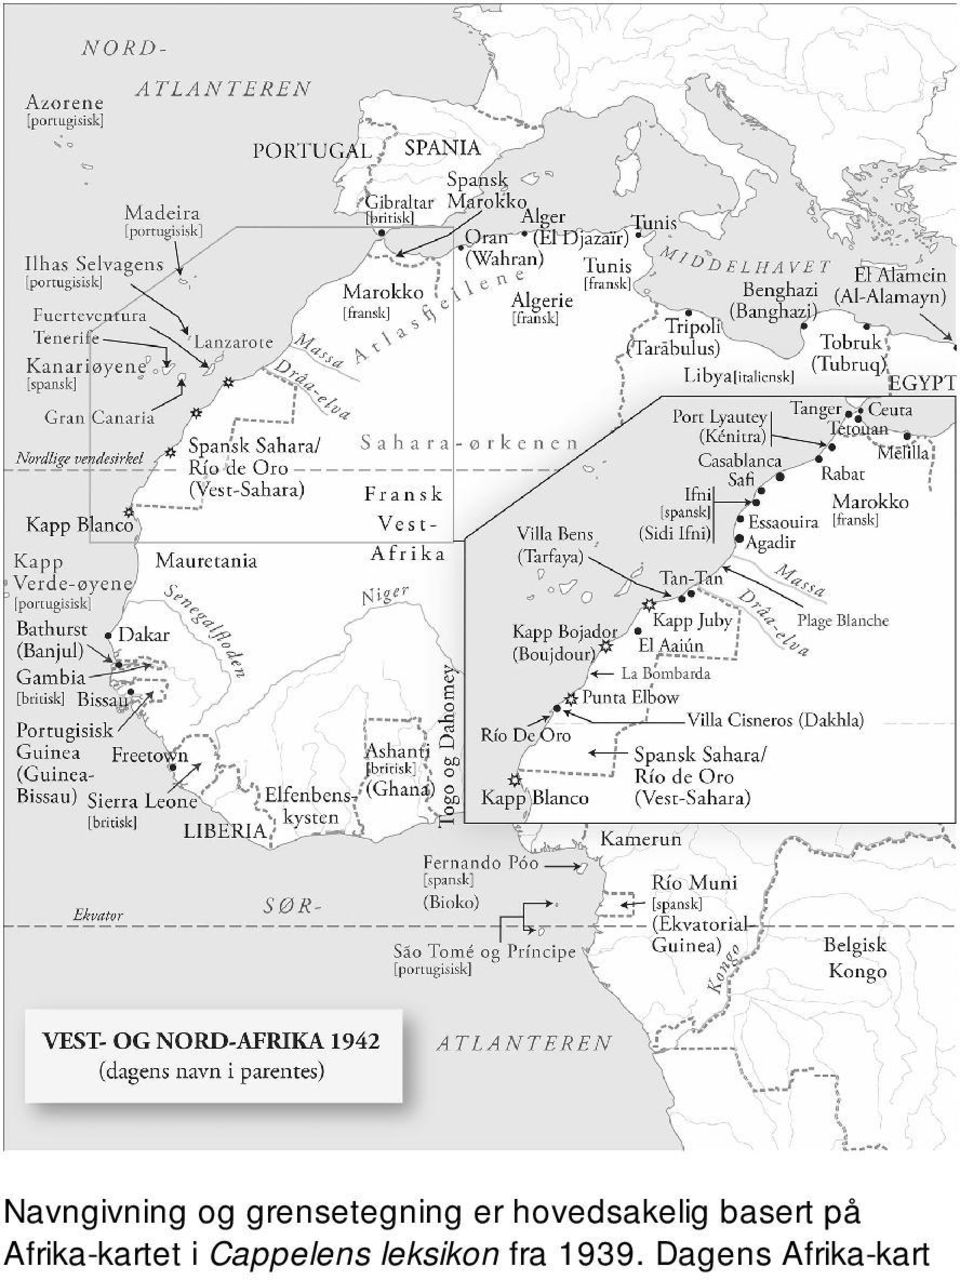 Afrika-kartet i Cappelens